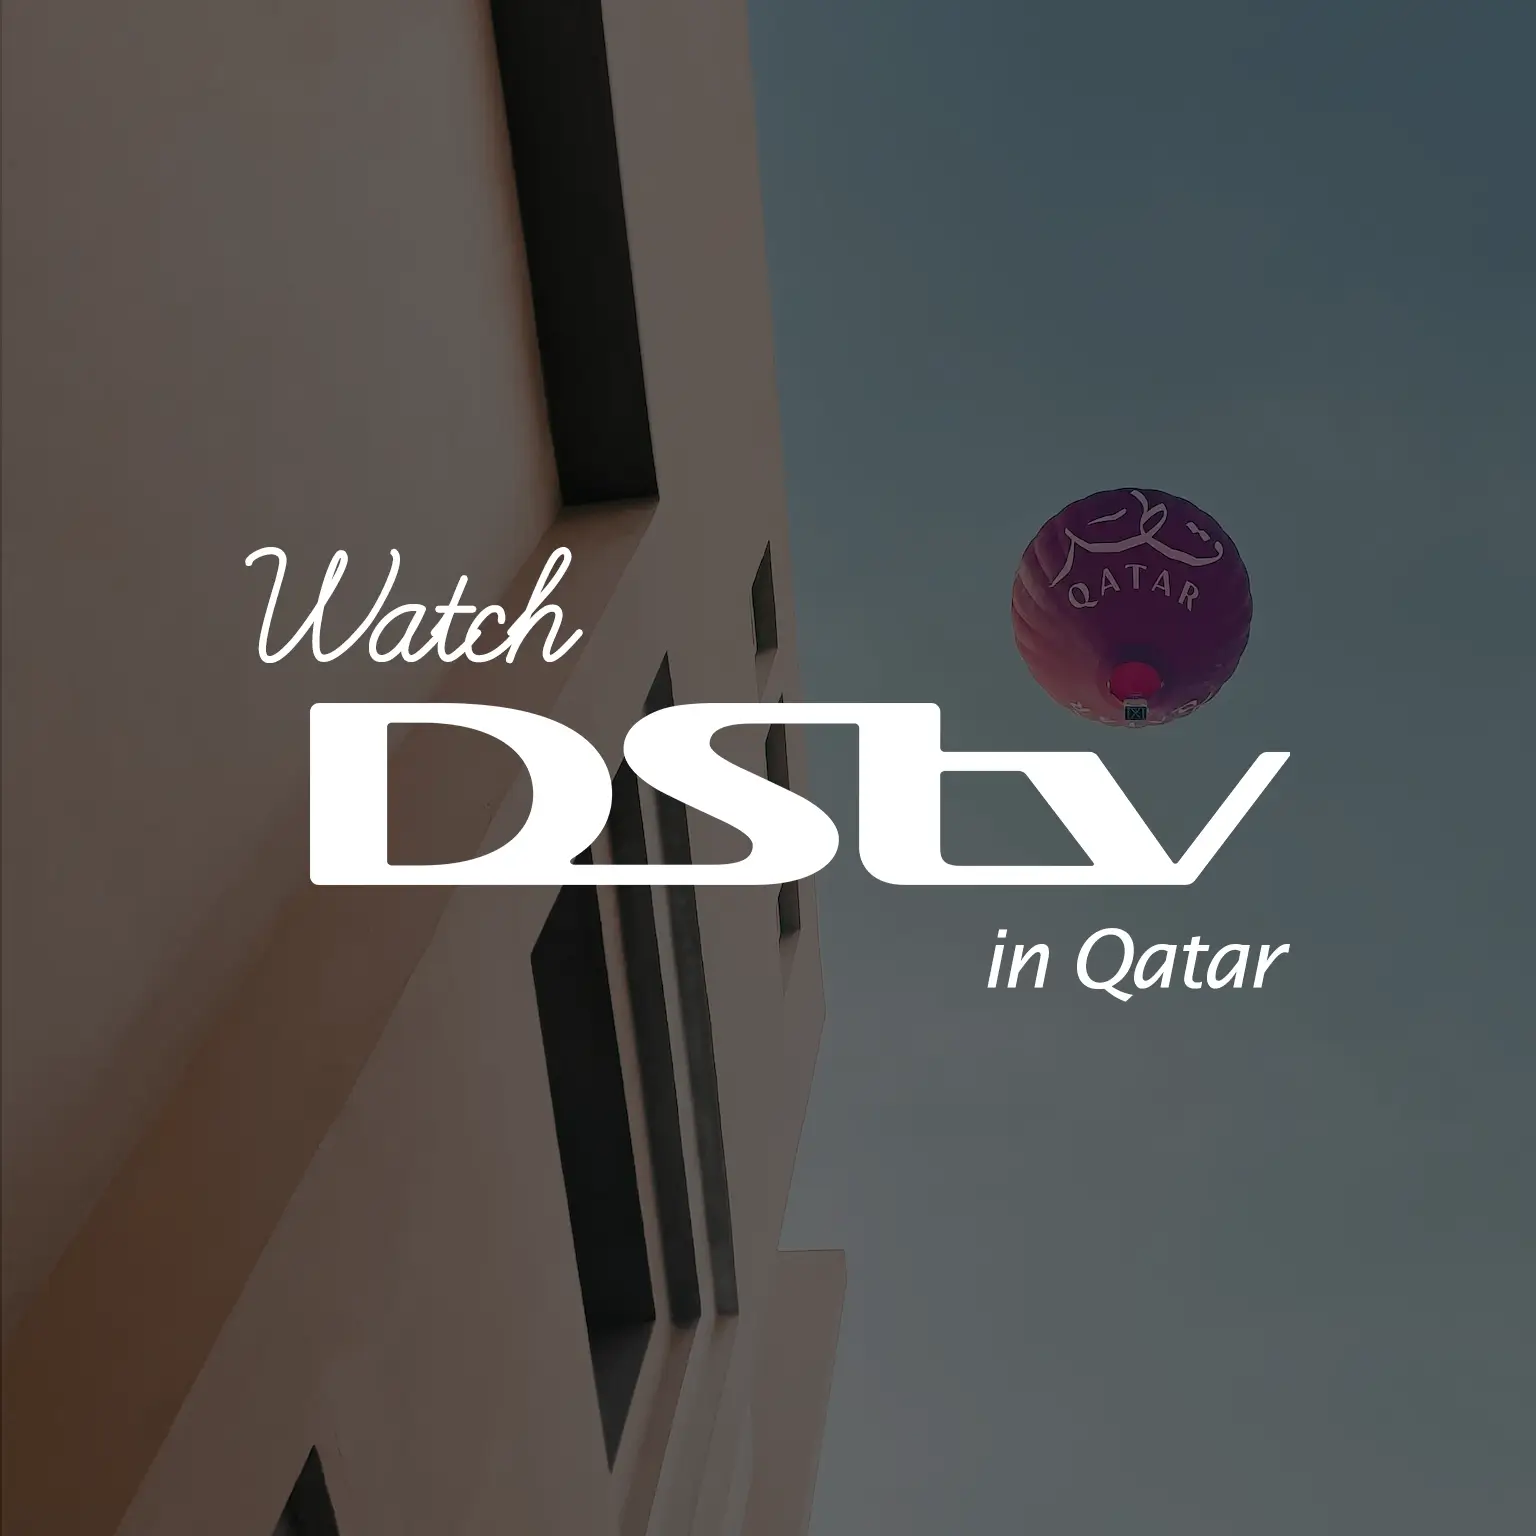 Watch DStv in Qatar